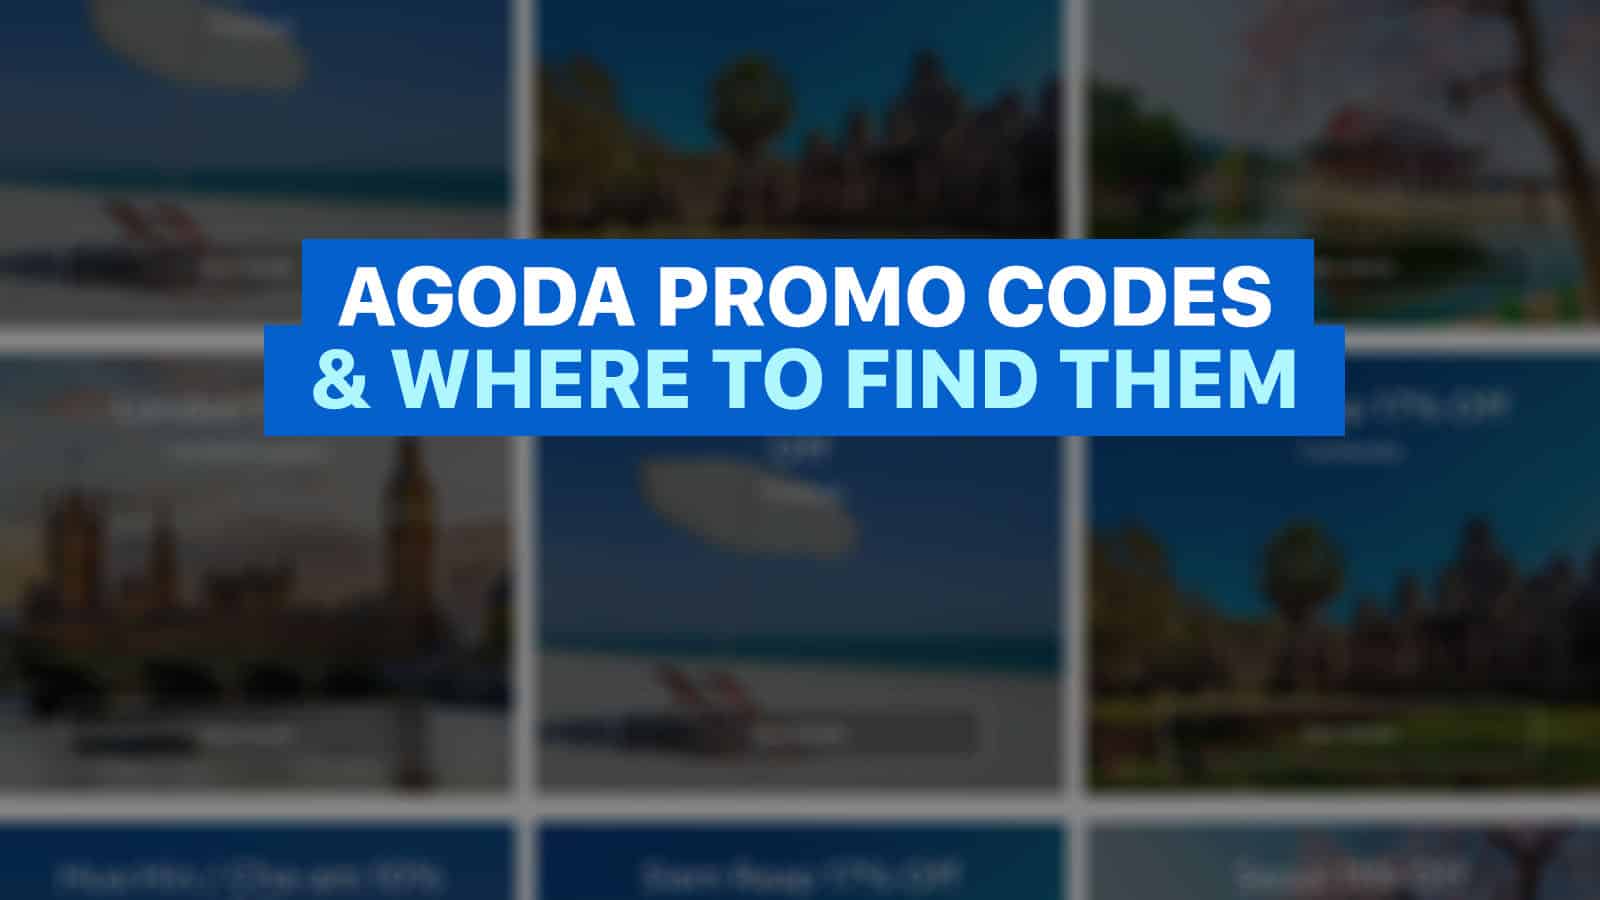 Agoda促销代码以及在哪里找到它们